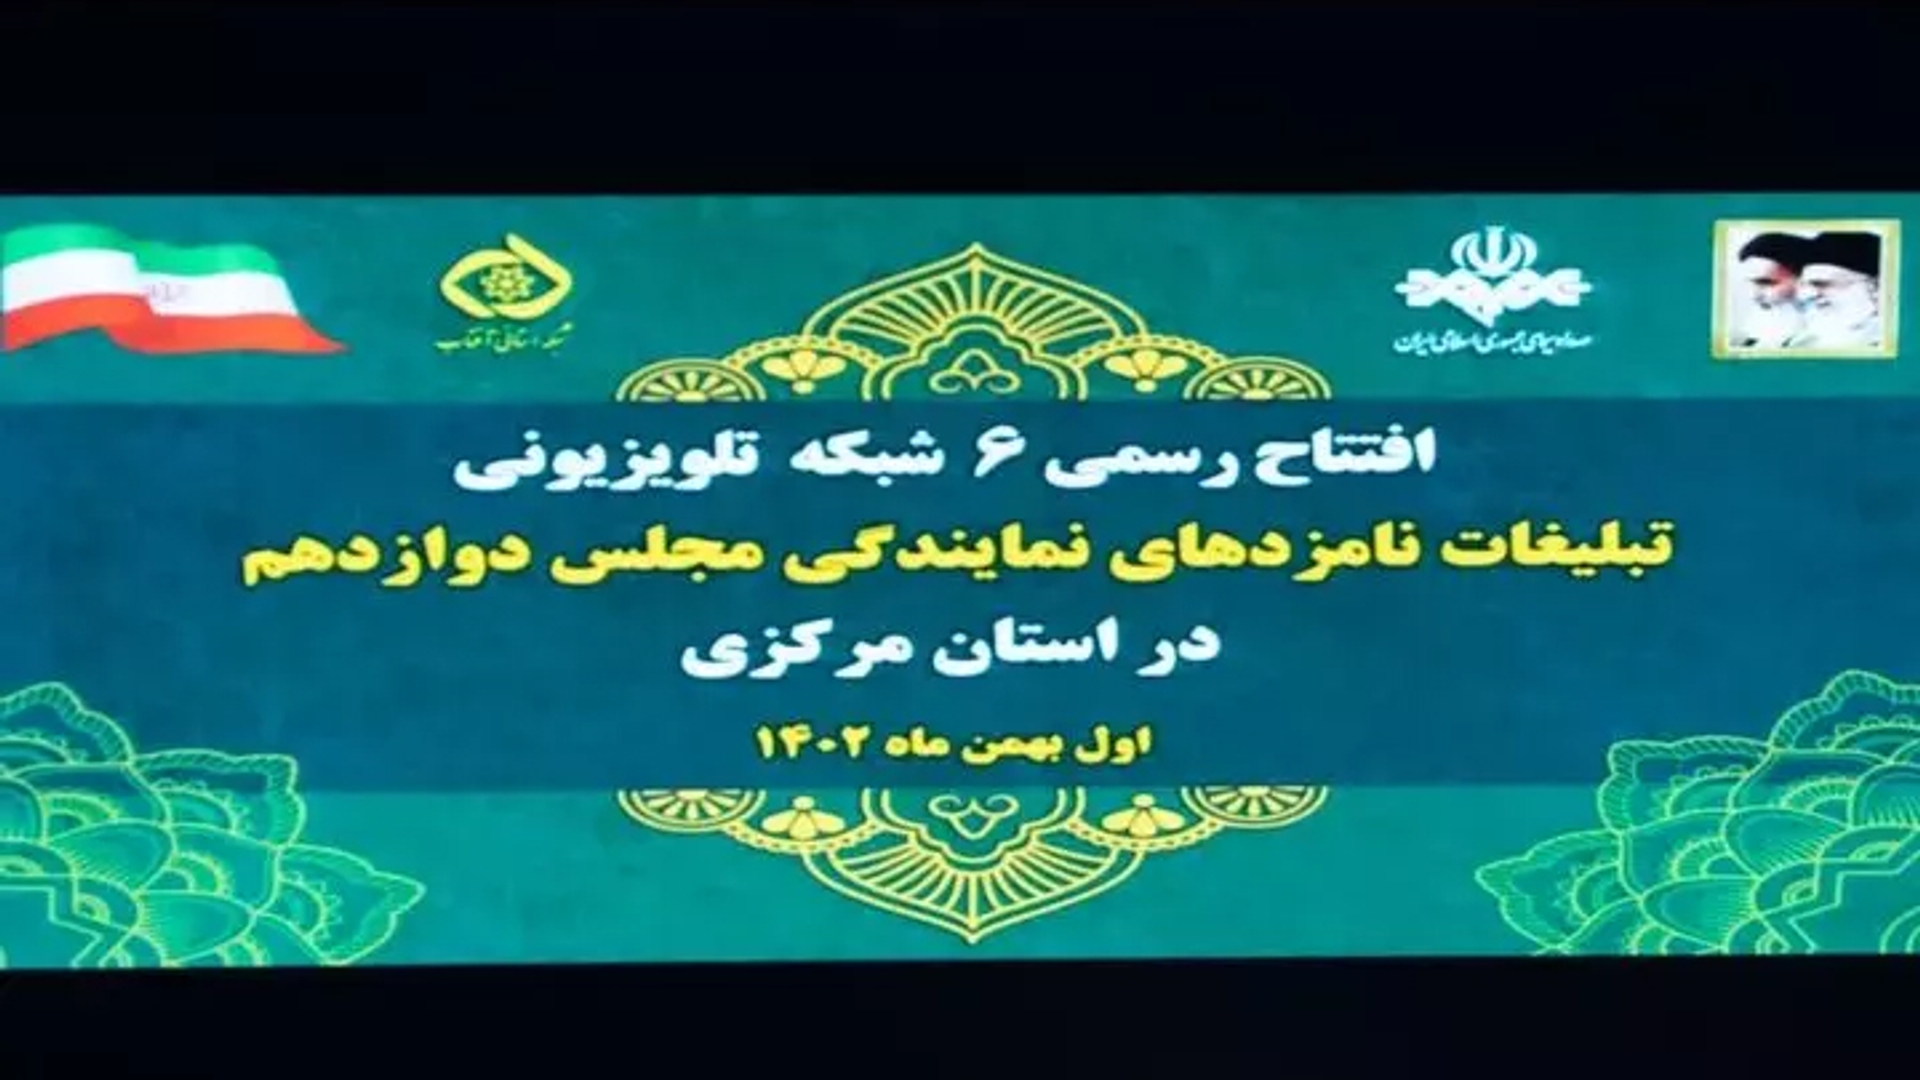 افتتاح شش شبکه محلی تبلیغات نامزدهای انتخابات مجلس در استان مرکزی